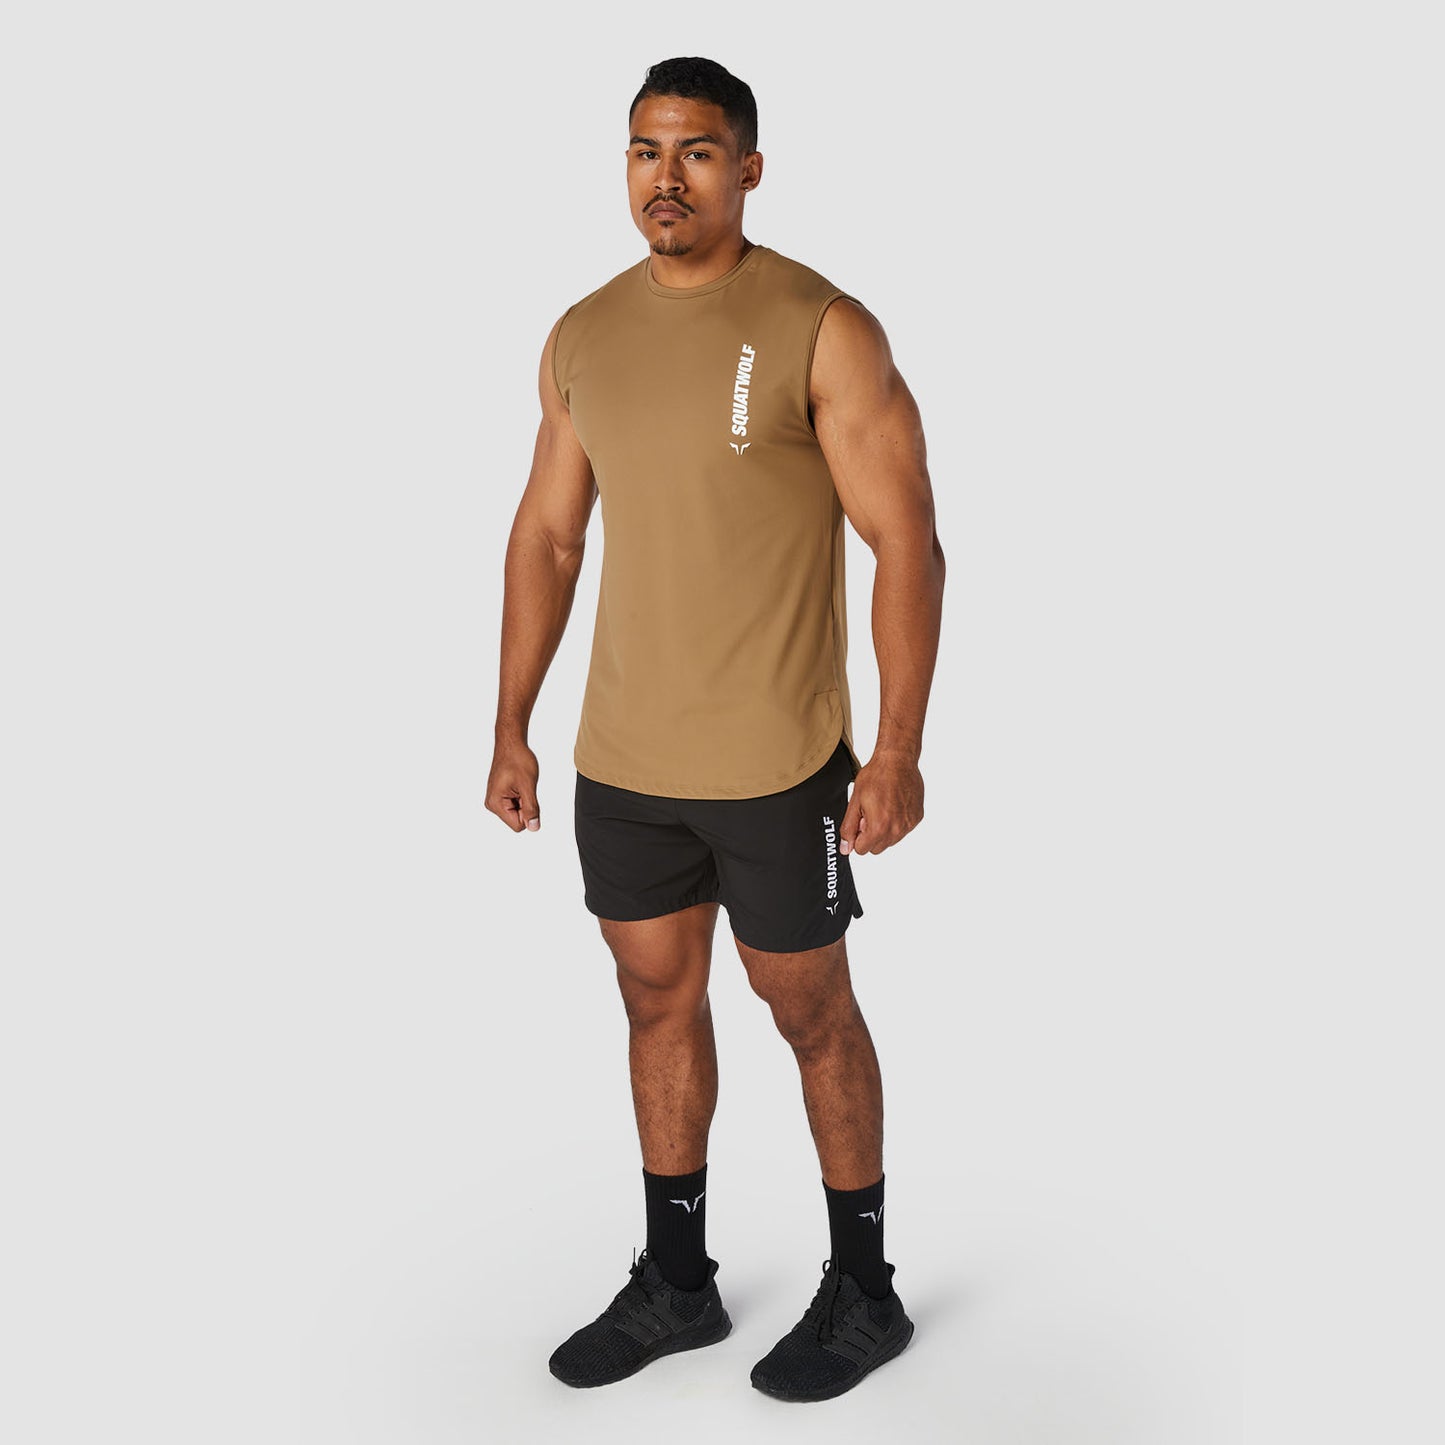 squatwolf-stringer-vests-for-men-warrior-tank-taupe-gym-wear